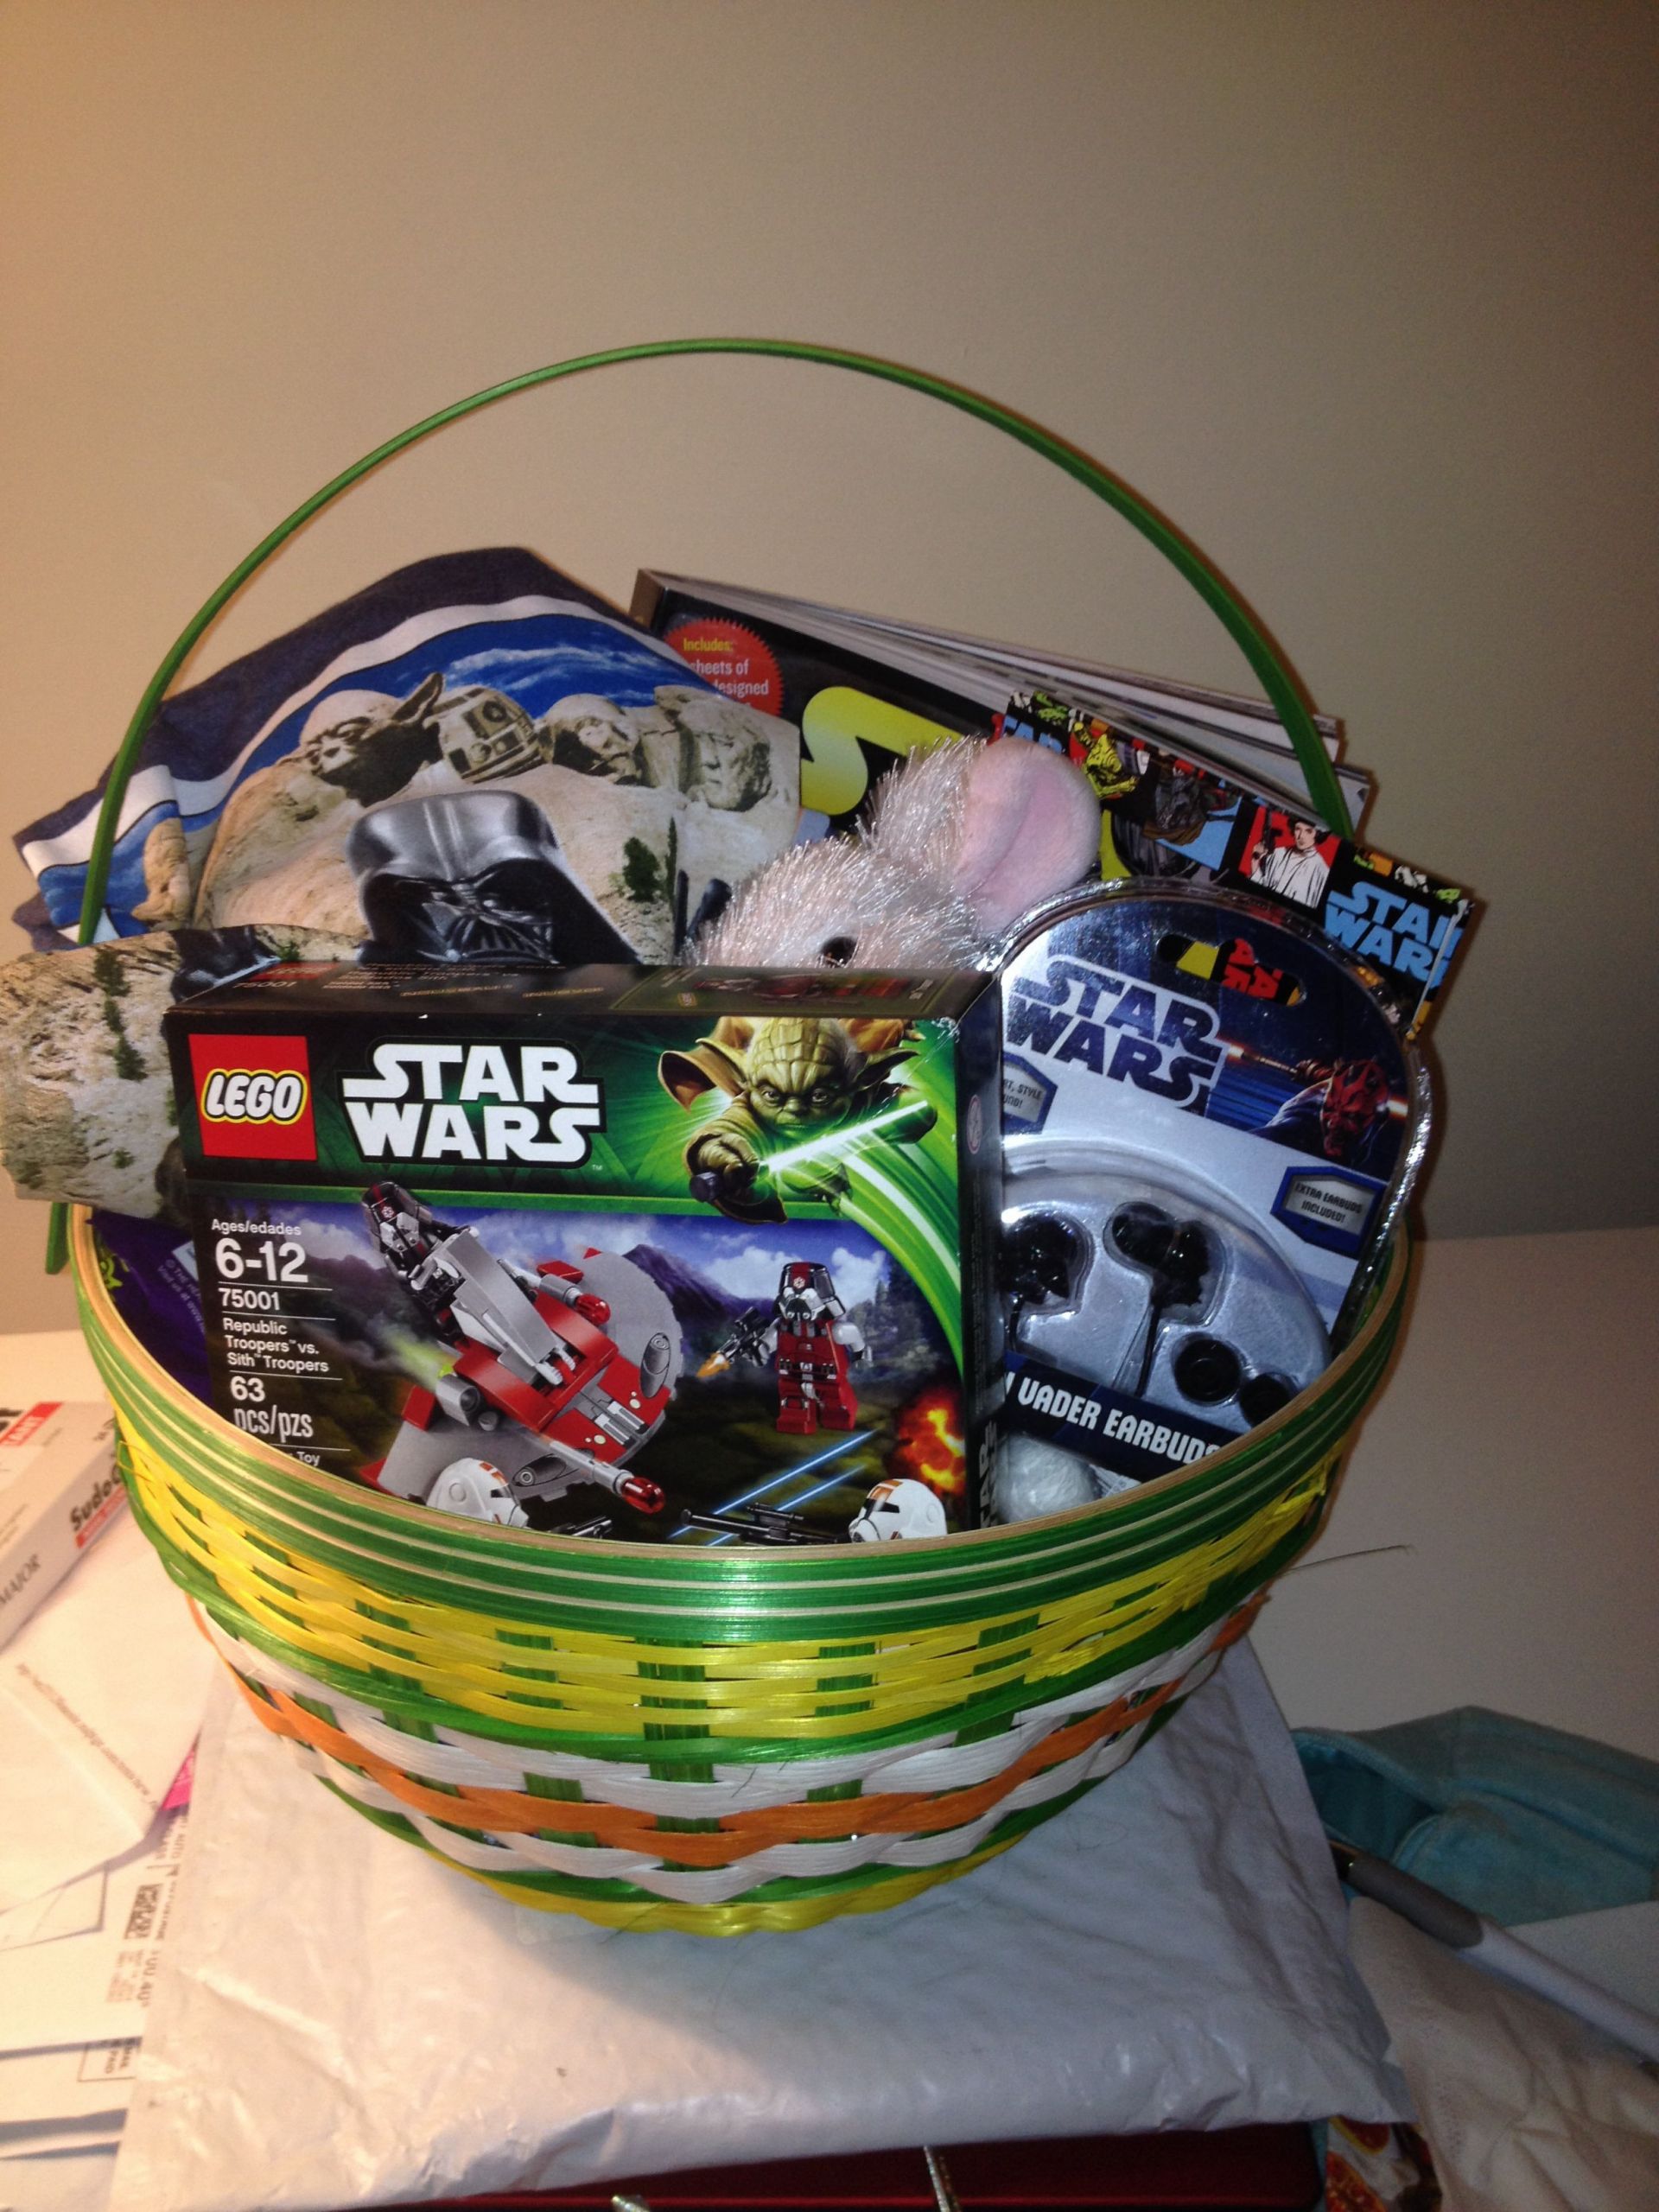 Star Wars Gift Basket Ideas
 Star Wars Easter Basket